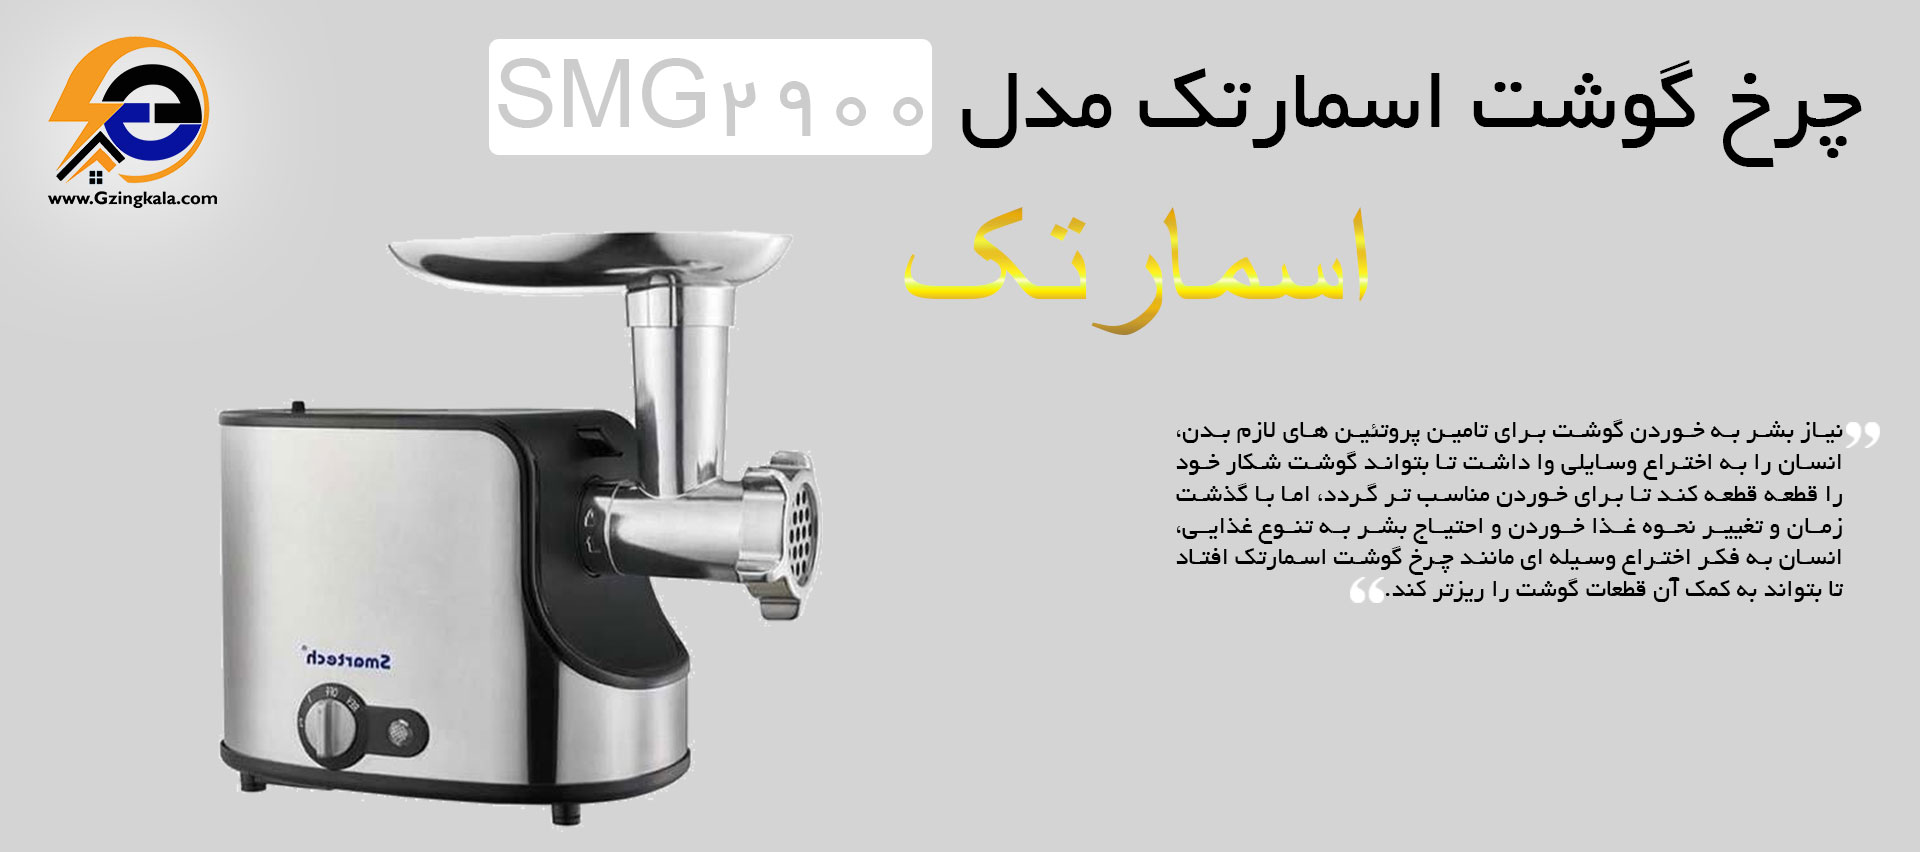 چرخ گوشت اسمارتک مدل SMG2900